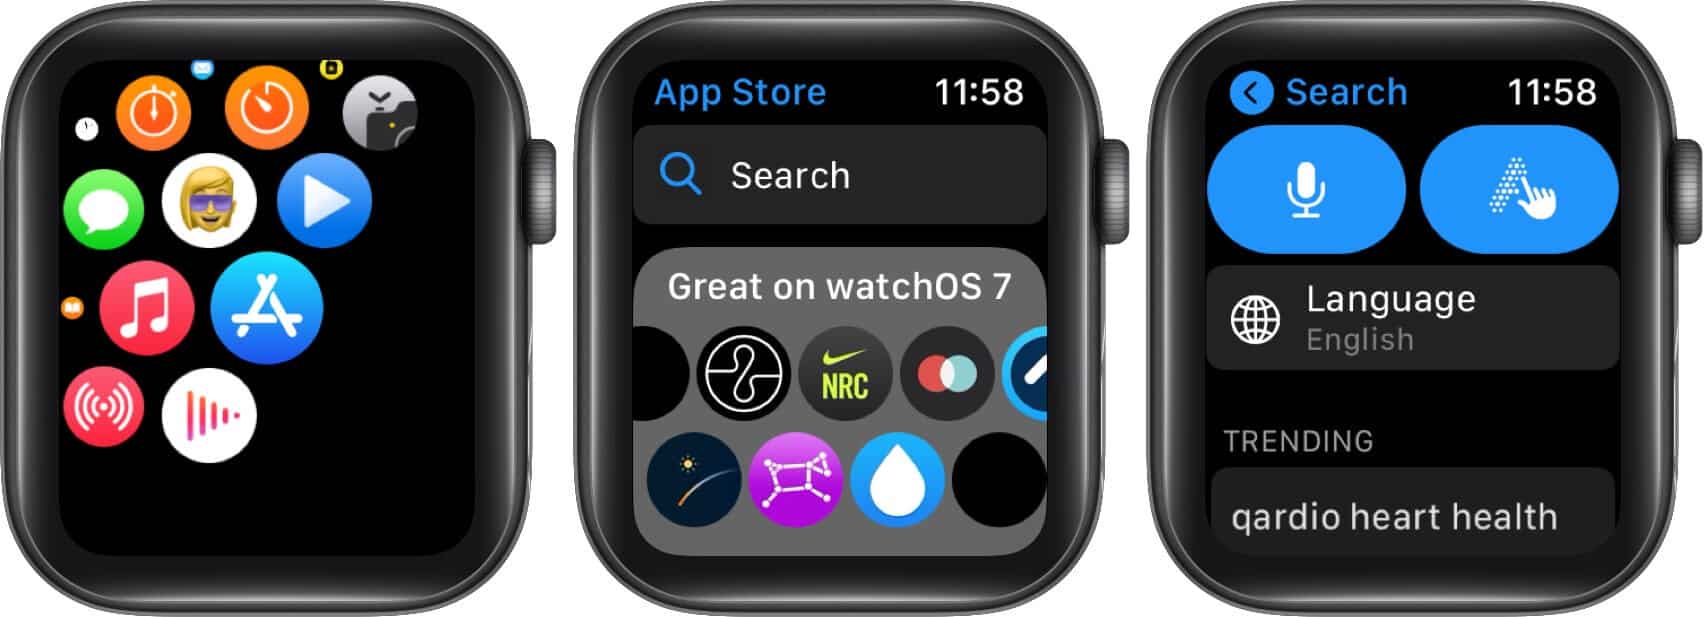 Откройте App Store, нажмите «Поиск» и используйте голосовые команды или каракули на Apple Watch.